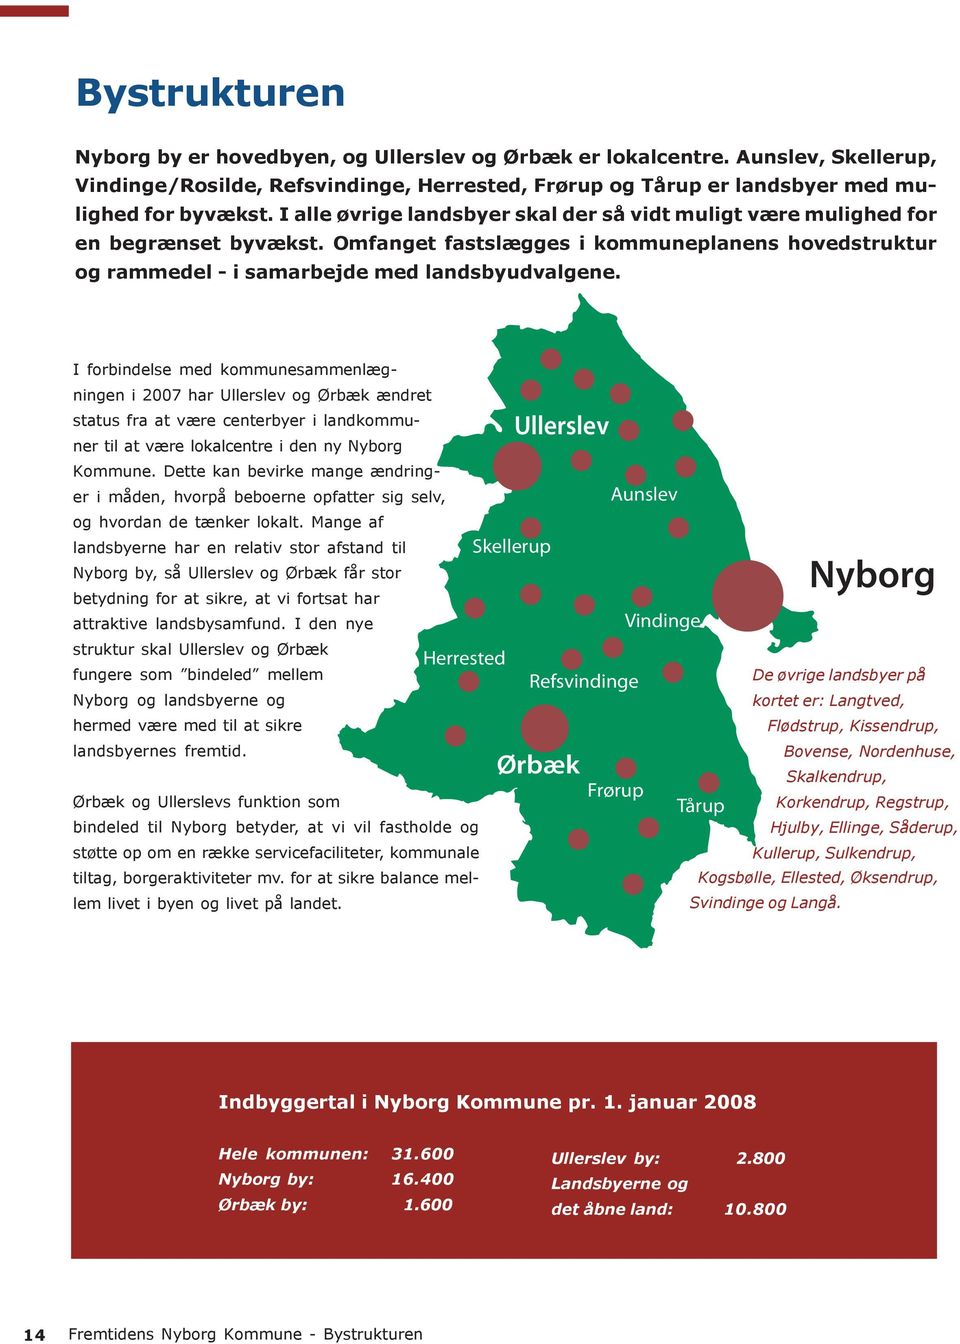 I forbindelse med kommunesammenlægningen Hele i kommunen: 2007 har Ullerslev 31.500 og Ørbæk ændret status fra at være centerbyer i landkommuner Nyborg til at være by: lokalcentre 16.